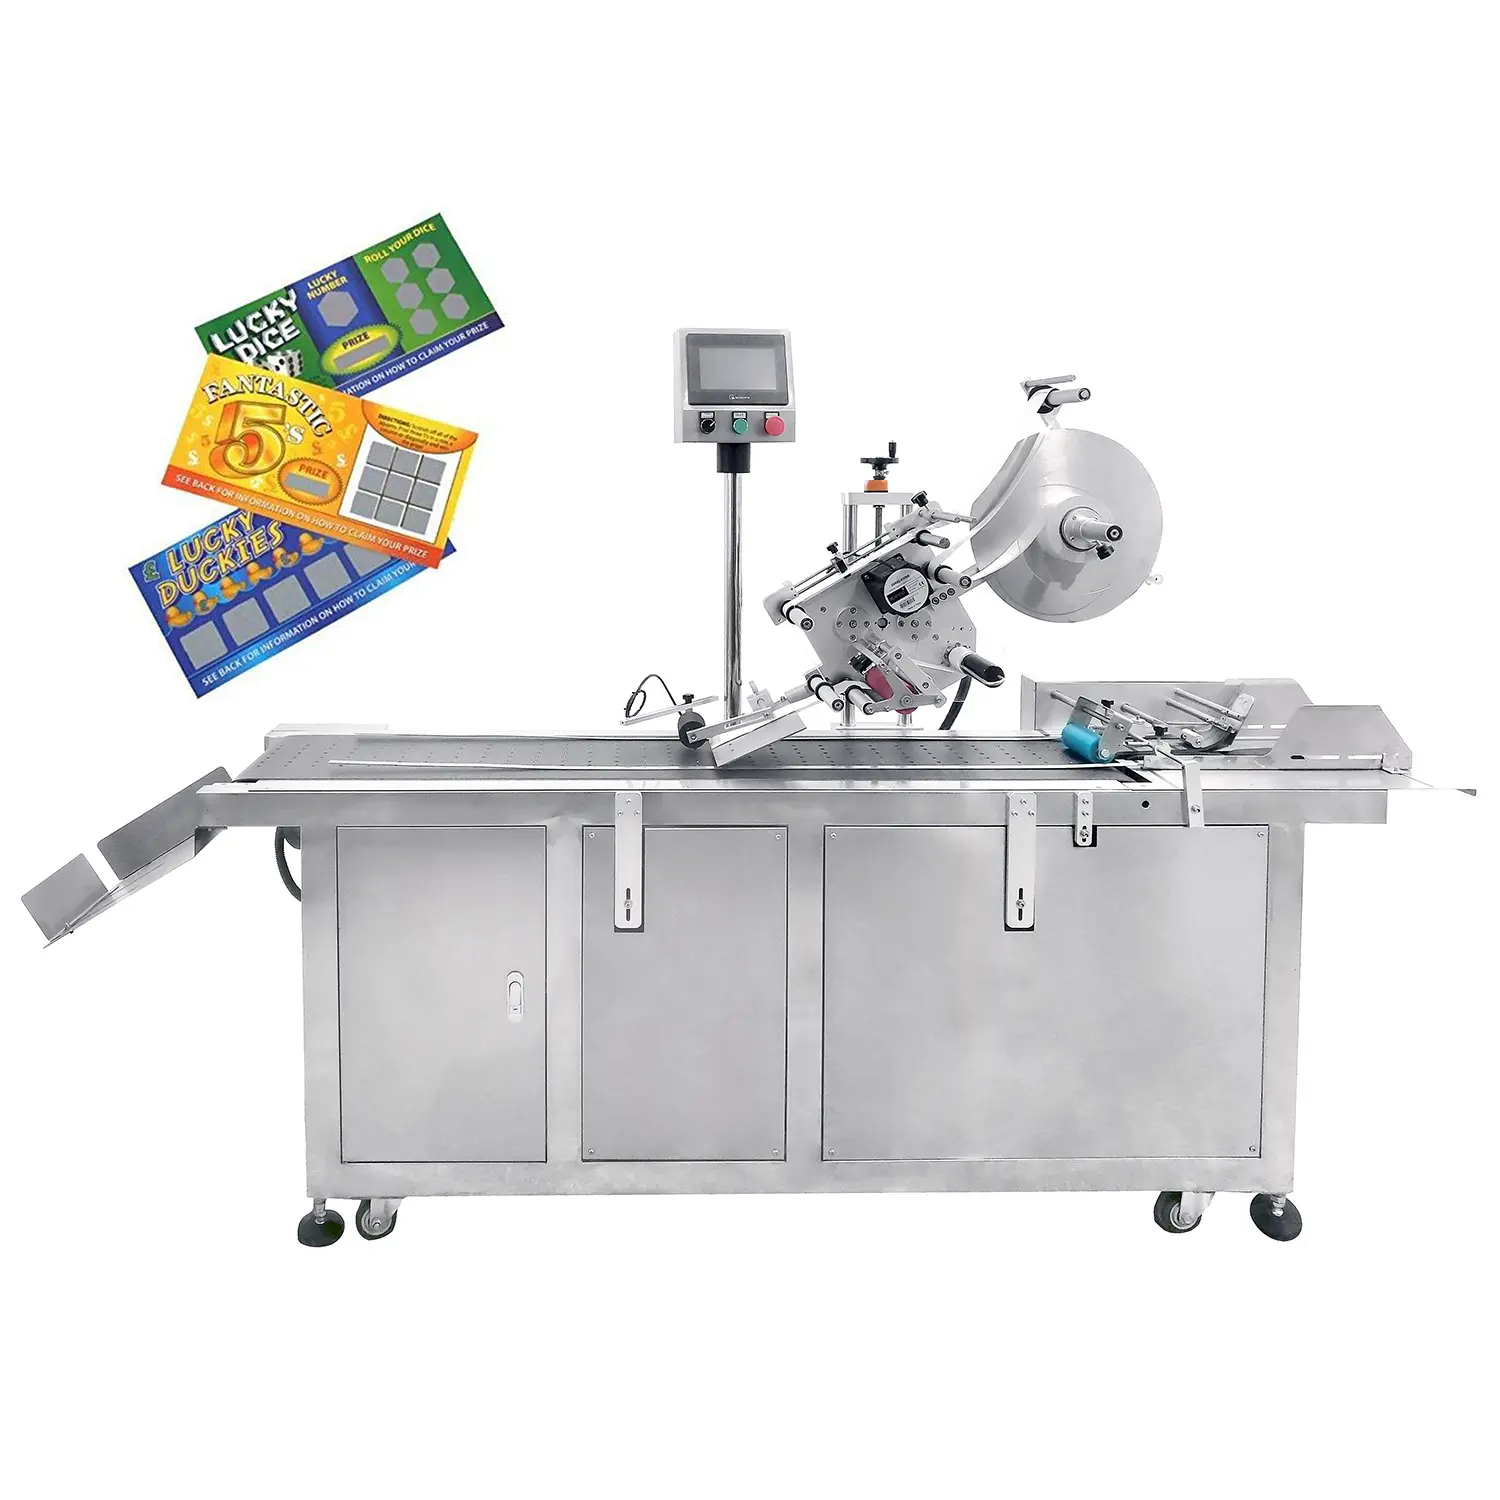 YM210D mesin pembuat label otomatis, mesin pembuat label kartu antigores dengan wadah kartu